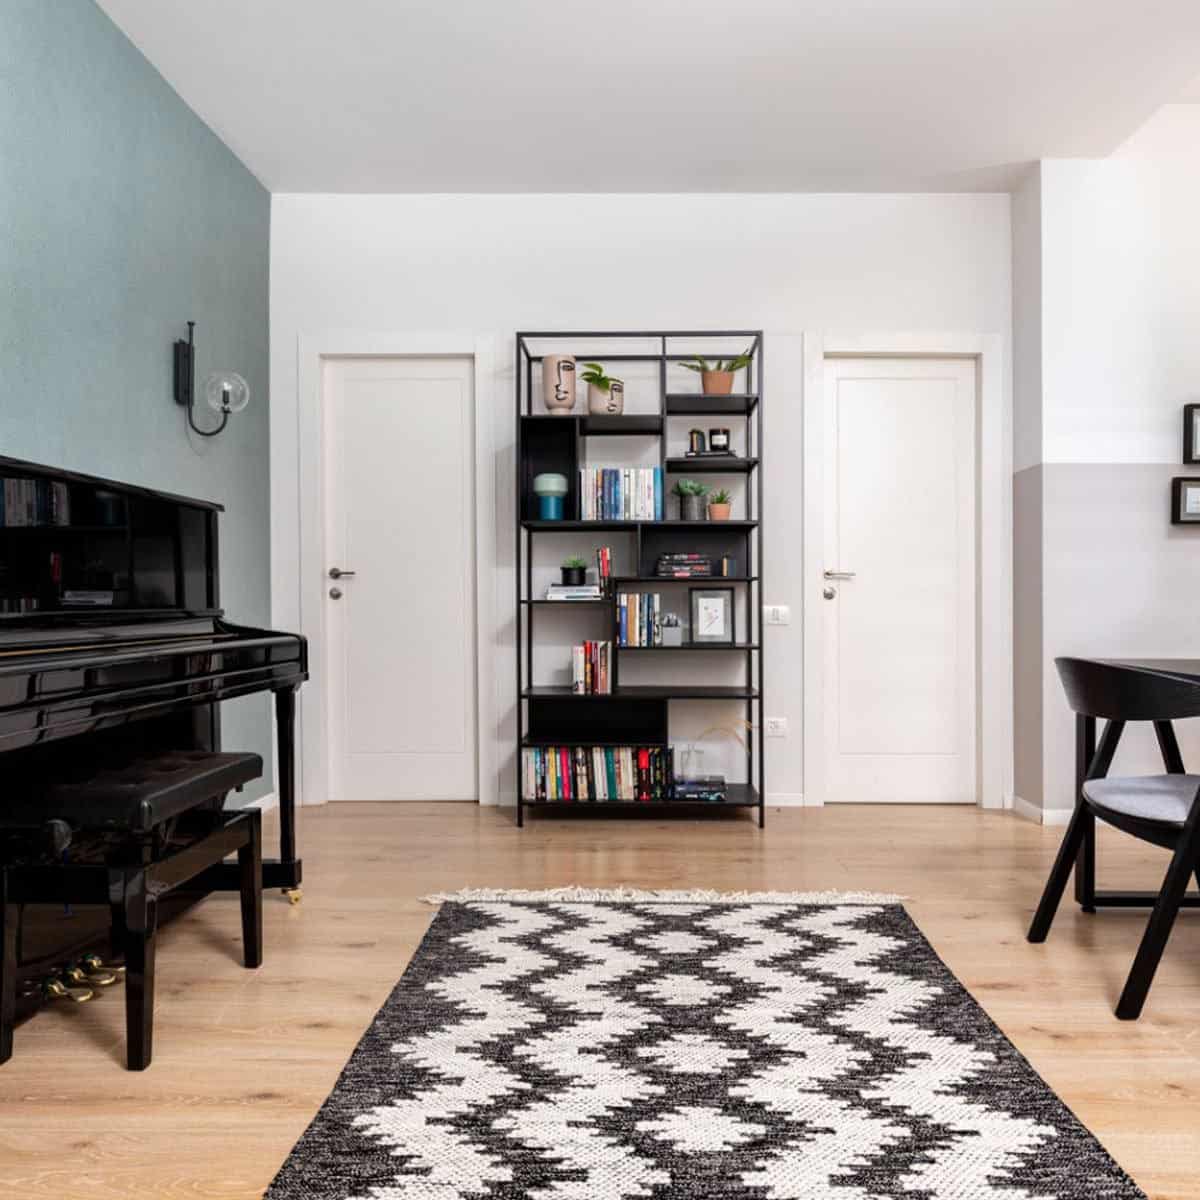 שטיח קילים סקנדינבי 11 אפור כהה/לבן עם פרנזים | השטיח האדום | עיצוב: דניאל פליישר, צילום: אורית ארנון 